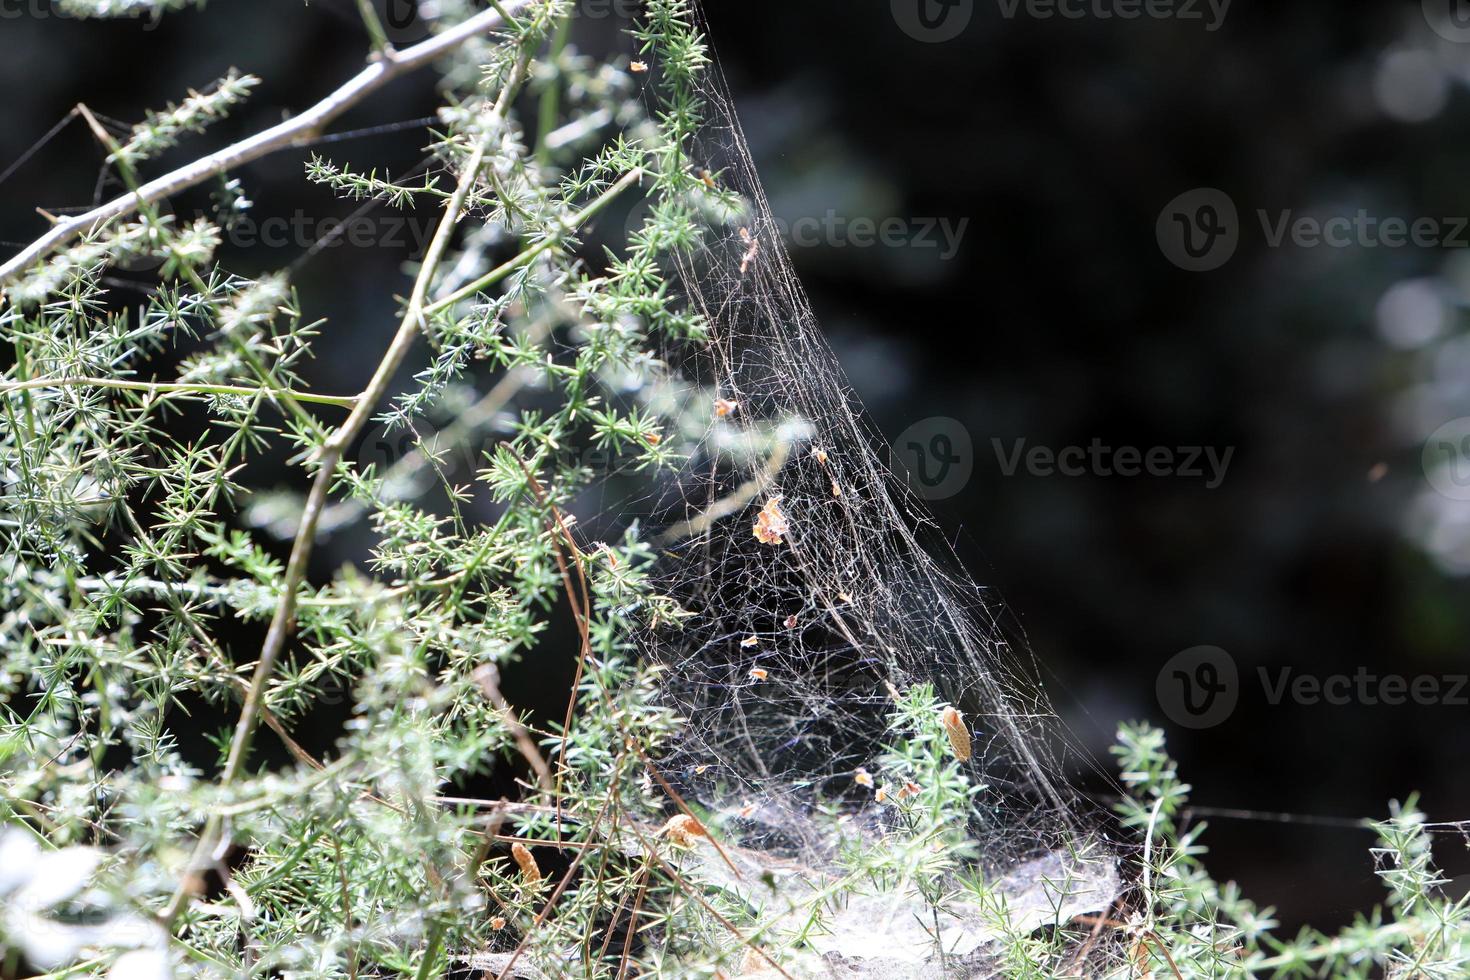 sur les branches et les feuilles des arbres des toiles d'araignées de fils fins. photo